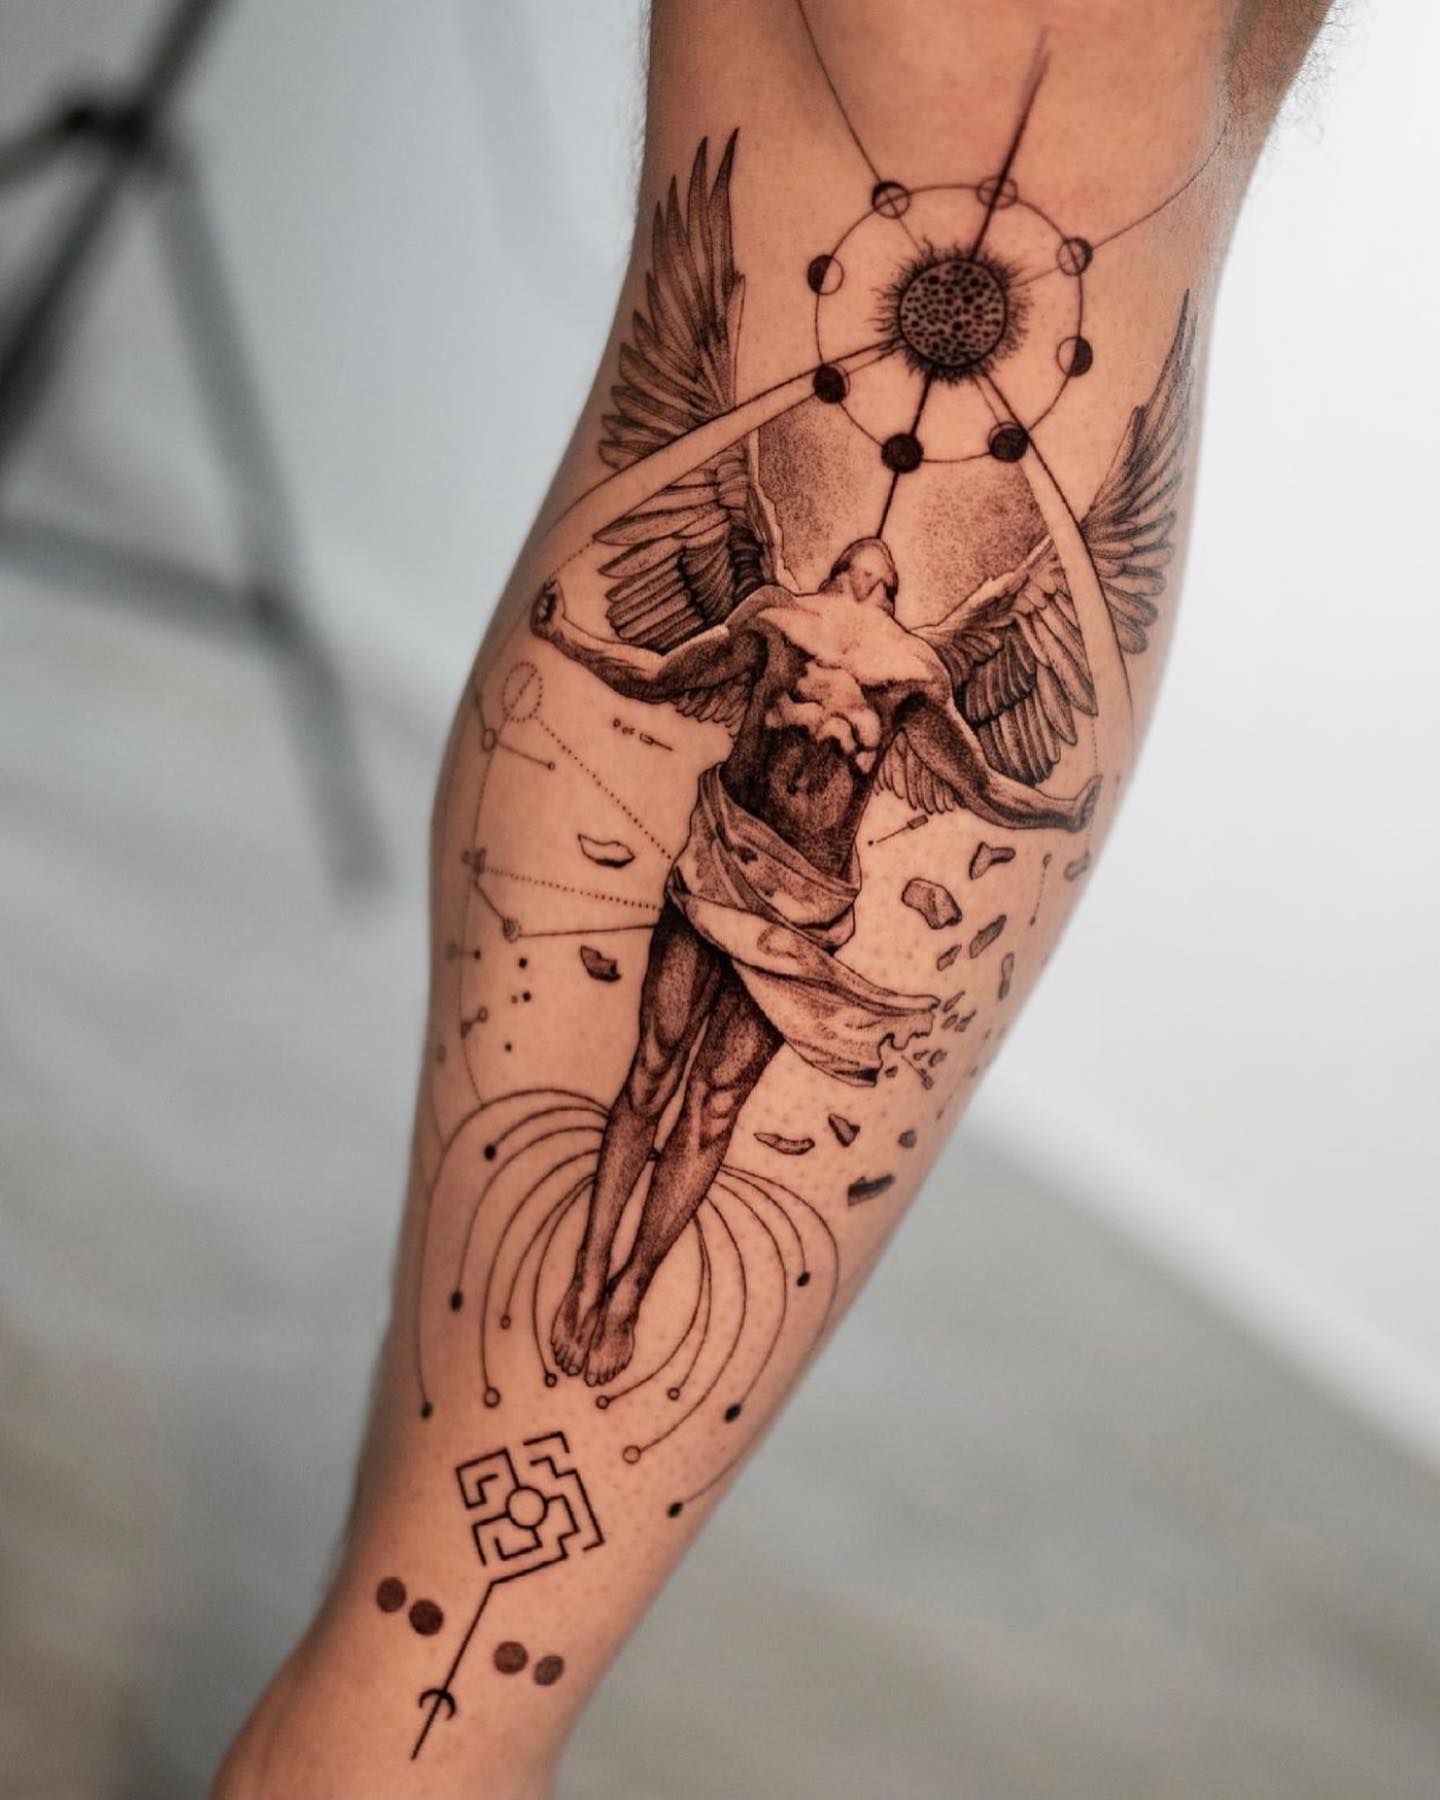 Tatuaje de Ícaro en la pierna.